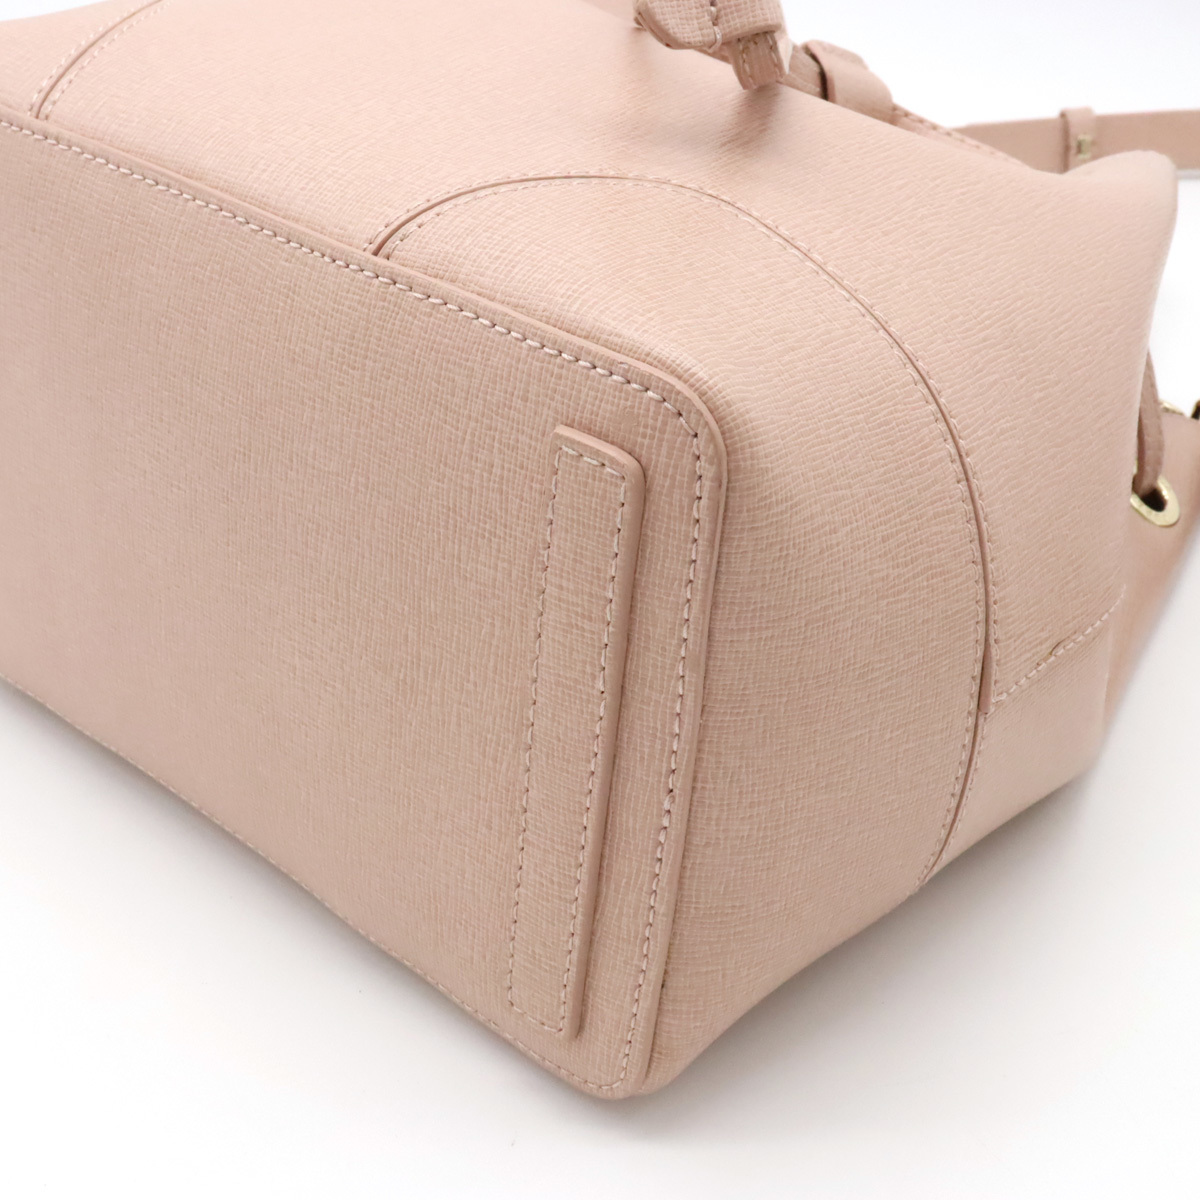 FURLA   полный ...  дамская сумка   2WAY  наплечная сумка  ... ... модель    кожа  ... розовый   золотой  металлическая арматура 